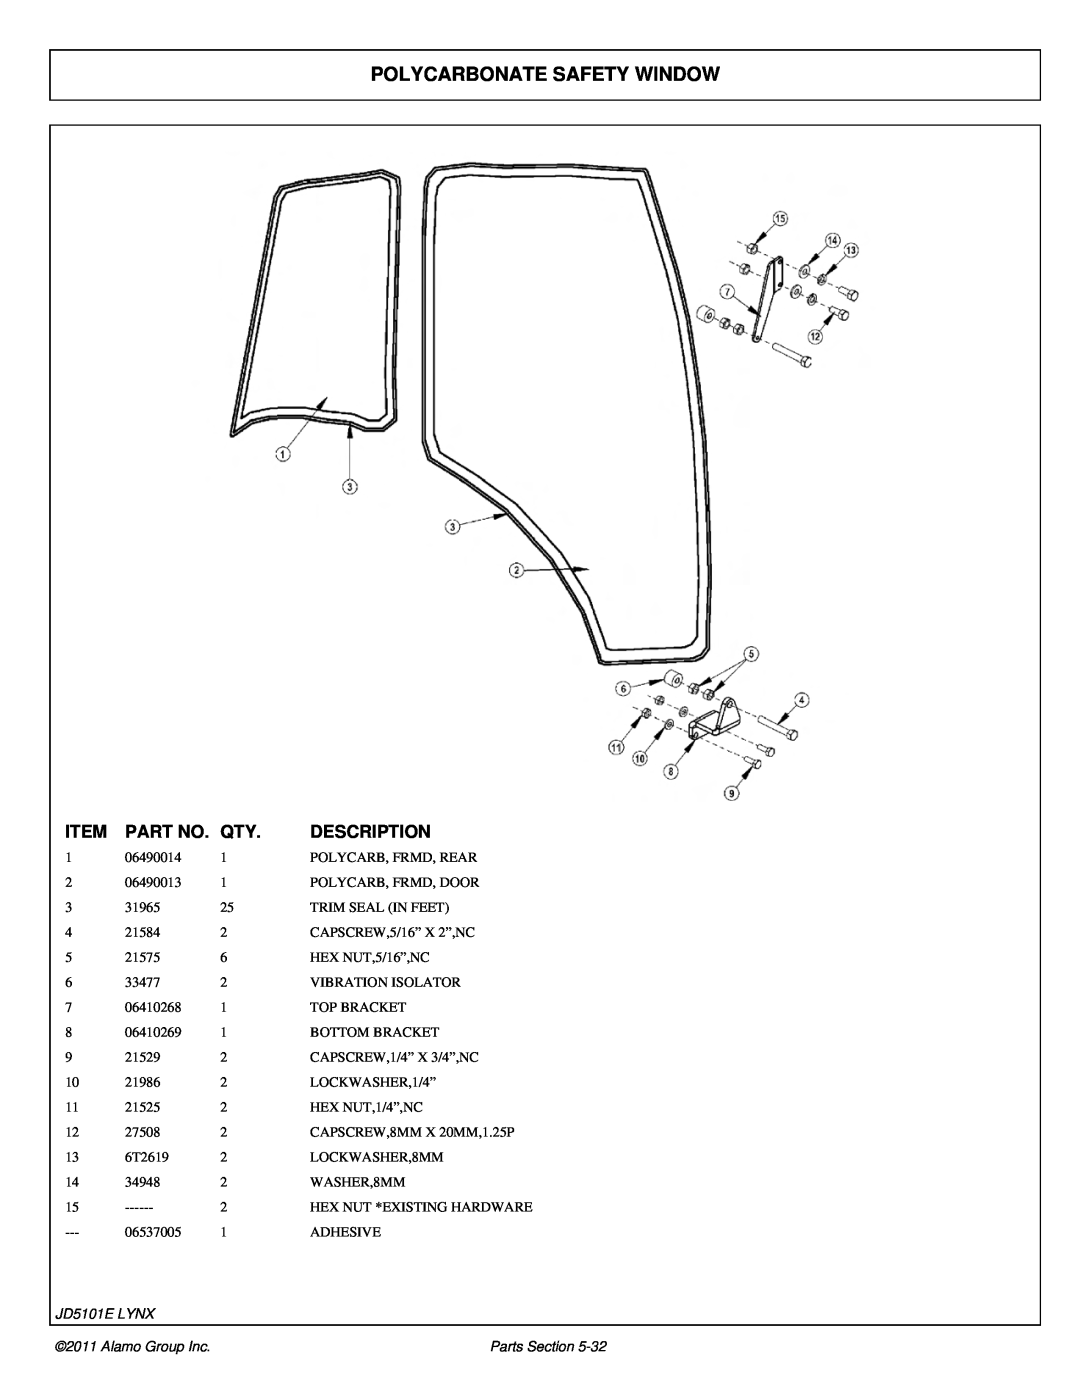 Tiger Products Co., Ltd 5093E manual Polycarbonate Safety Window, Item, Part No, Description, JD5101E LYNX, Alamo Group Inc 